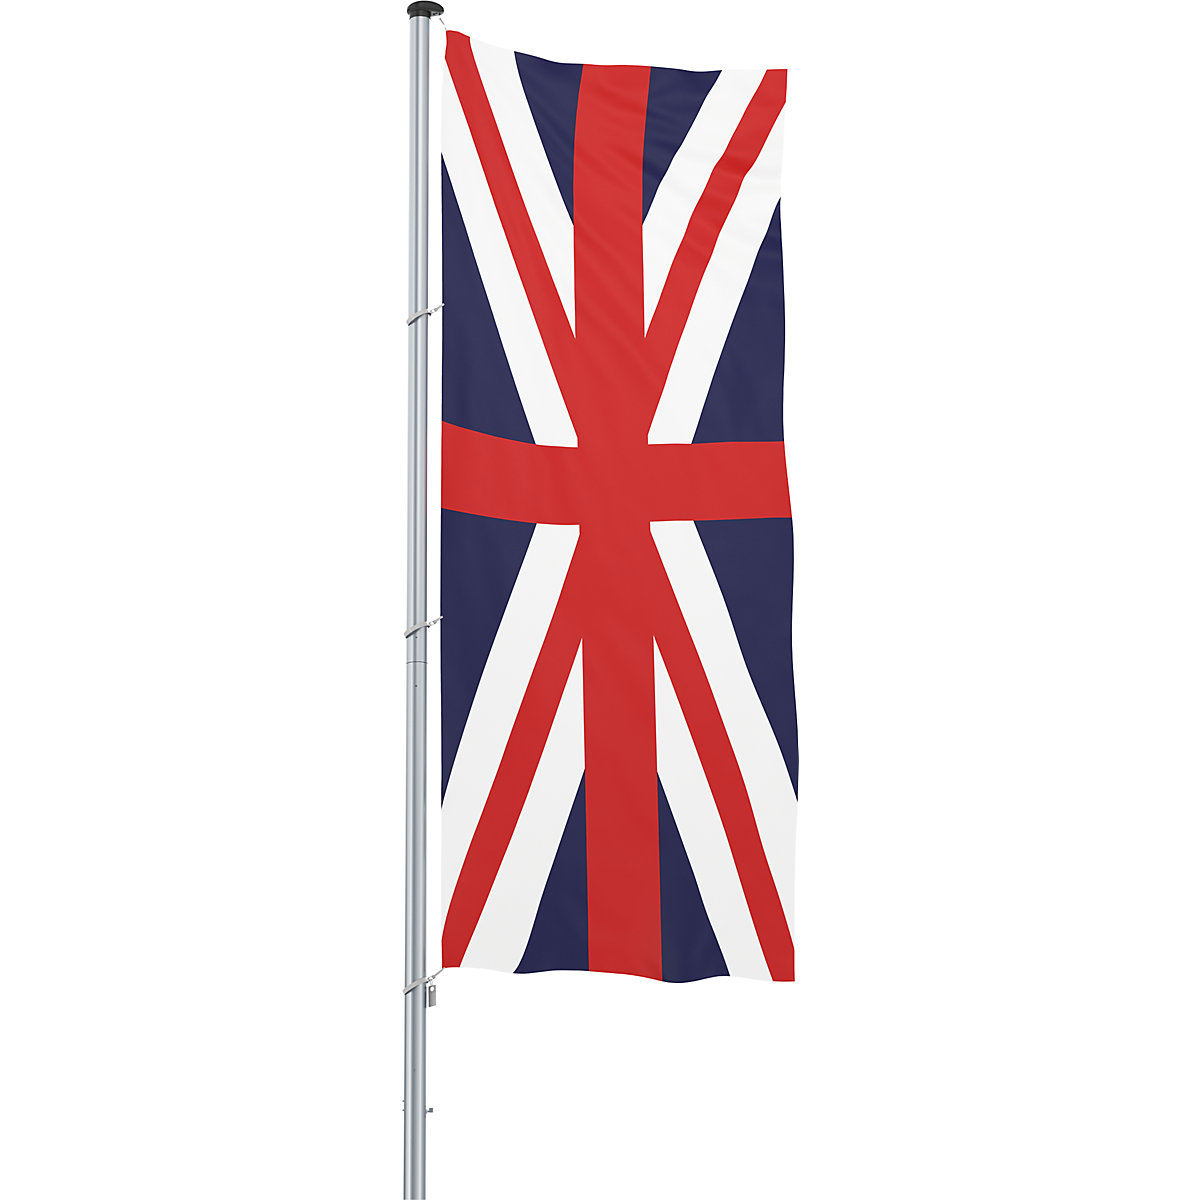 Mannus – Bandera para izar/bandera del país, formato 1,2 x 3 m, Gran Bretaña